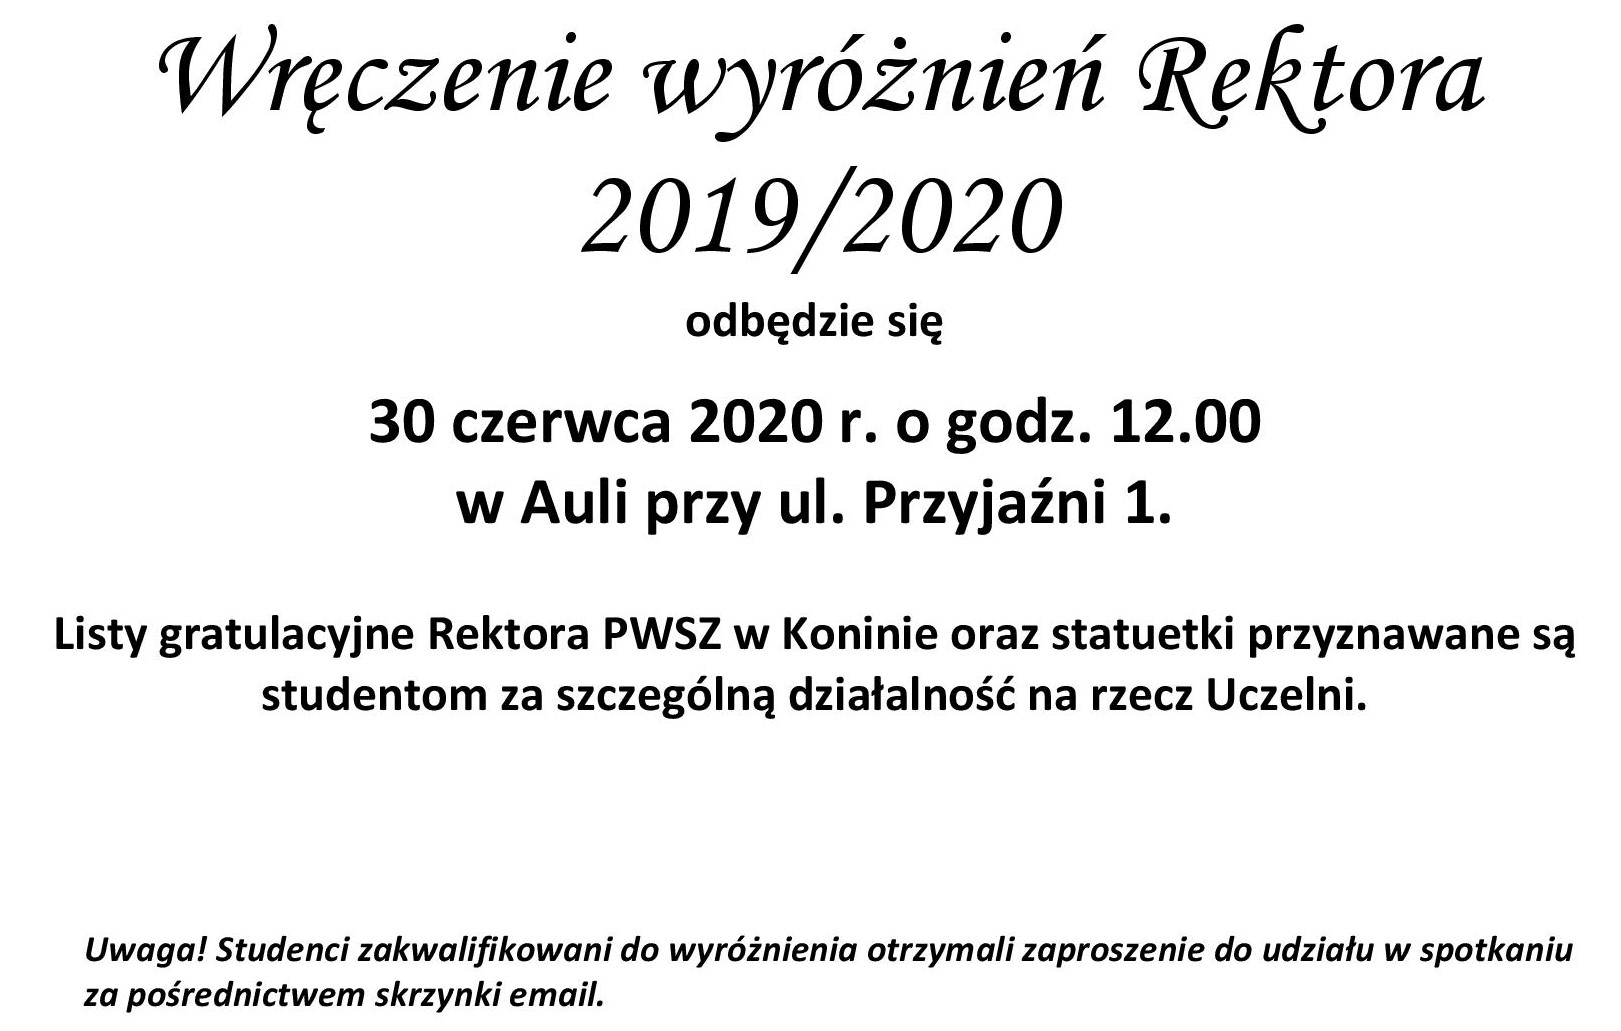 Wręczenie wyróżnień Rektora 2019/2020